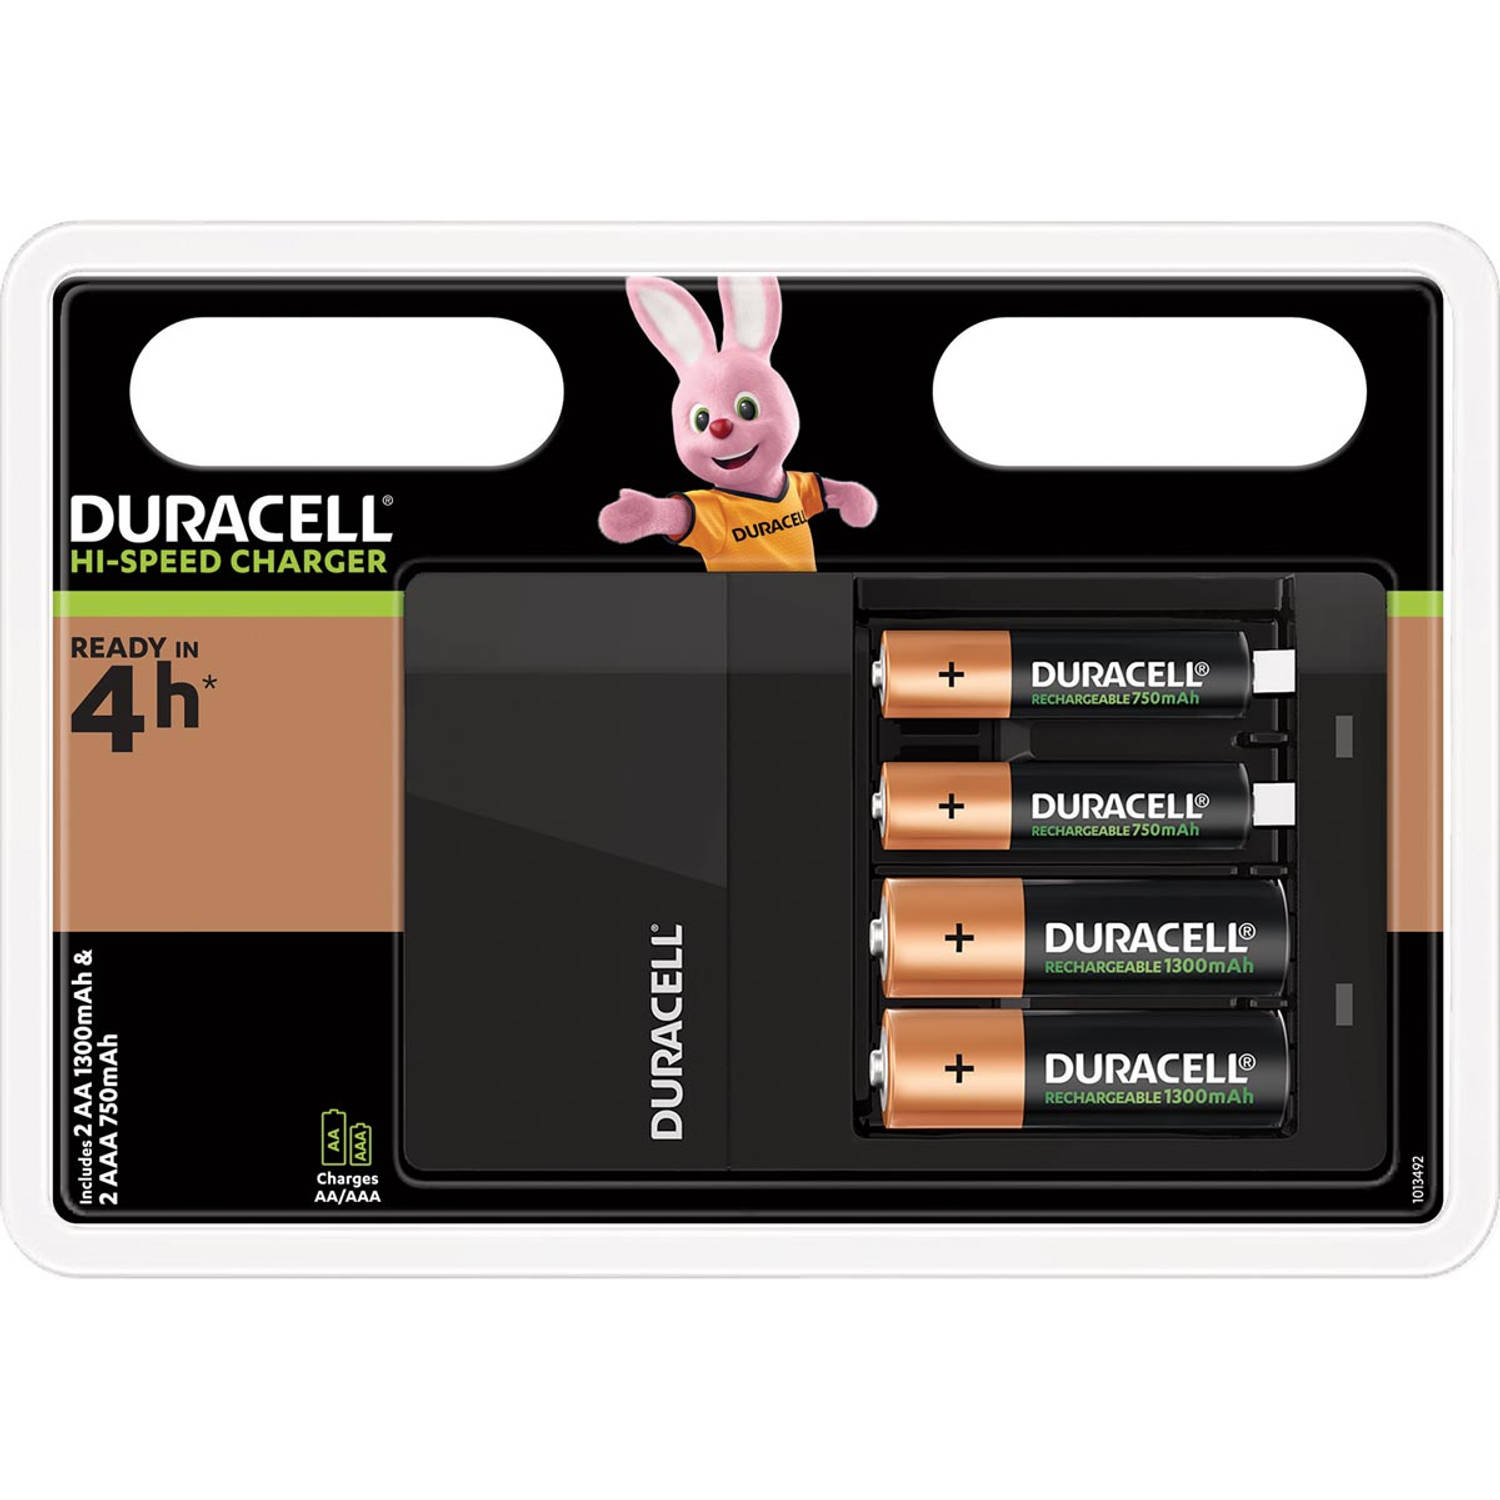 Duracell batterijlader Hi-Speed Value Charger, inclusief 2 AA en 2 AAA batterijen, op blister 6 stuks